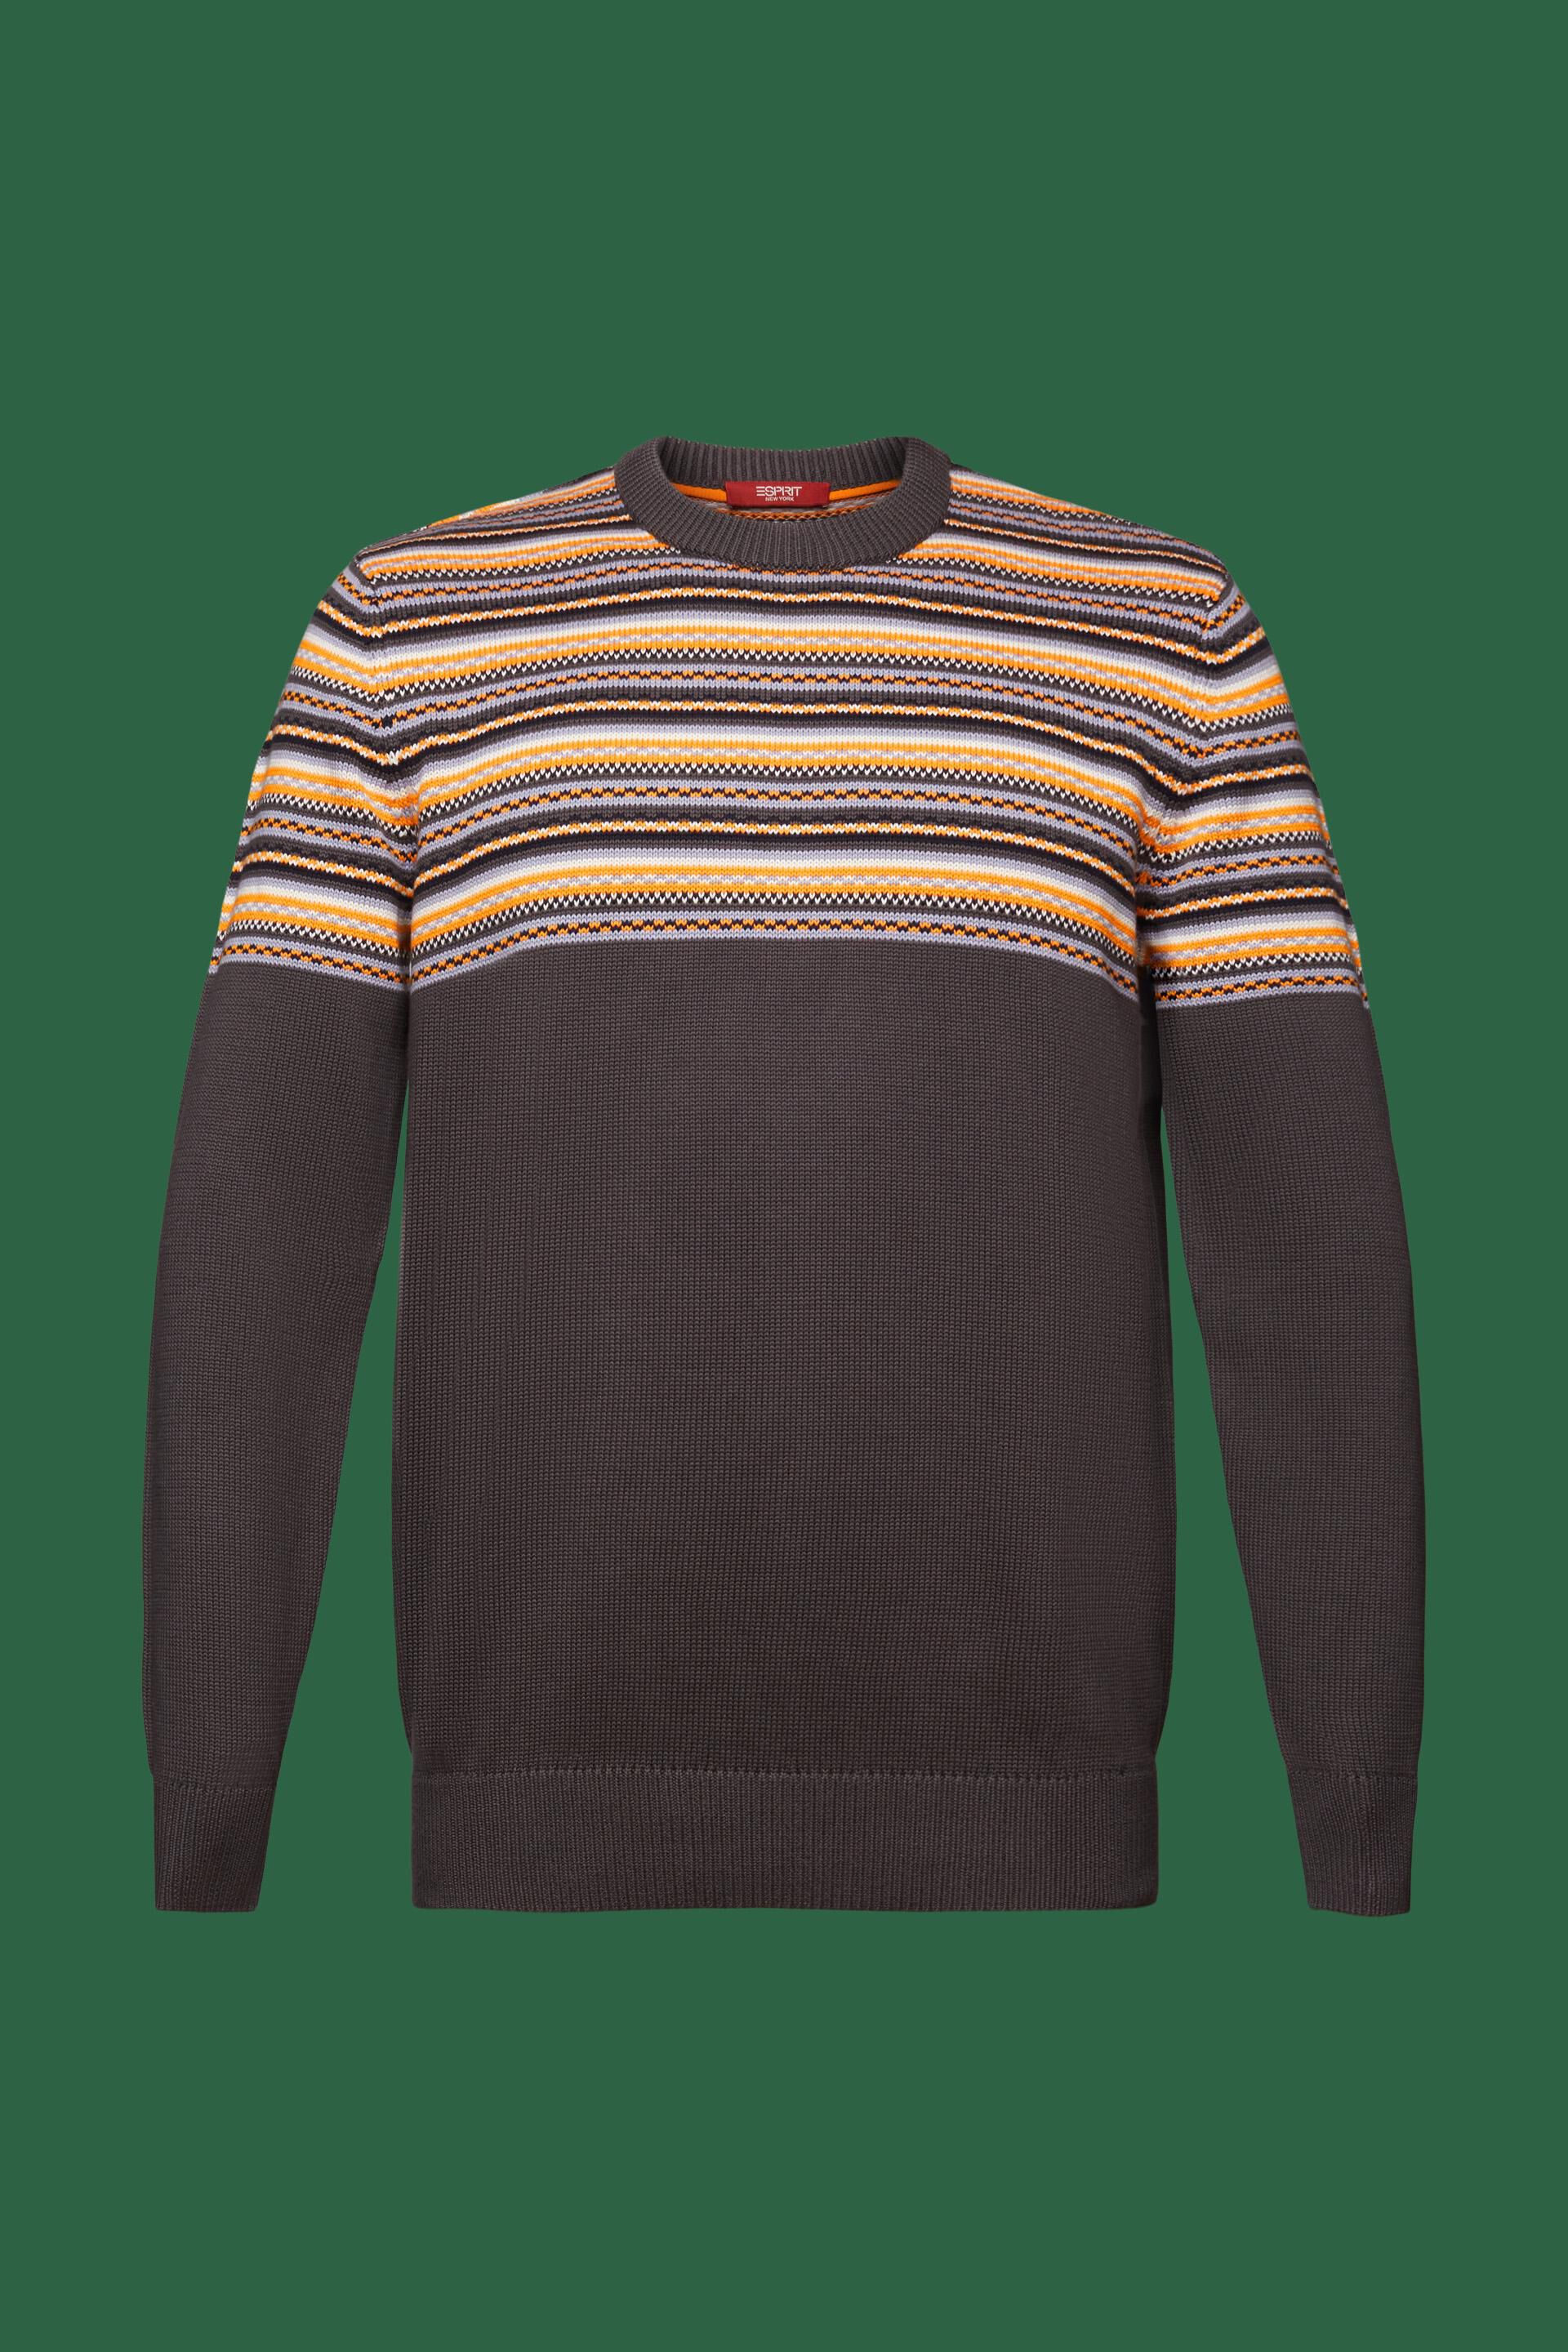 ESPRIT - Jacquard Cotton Crewneck Sweater at our online shop